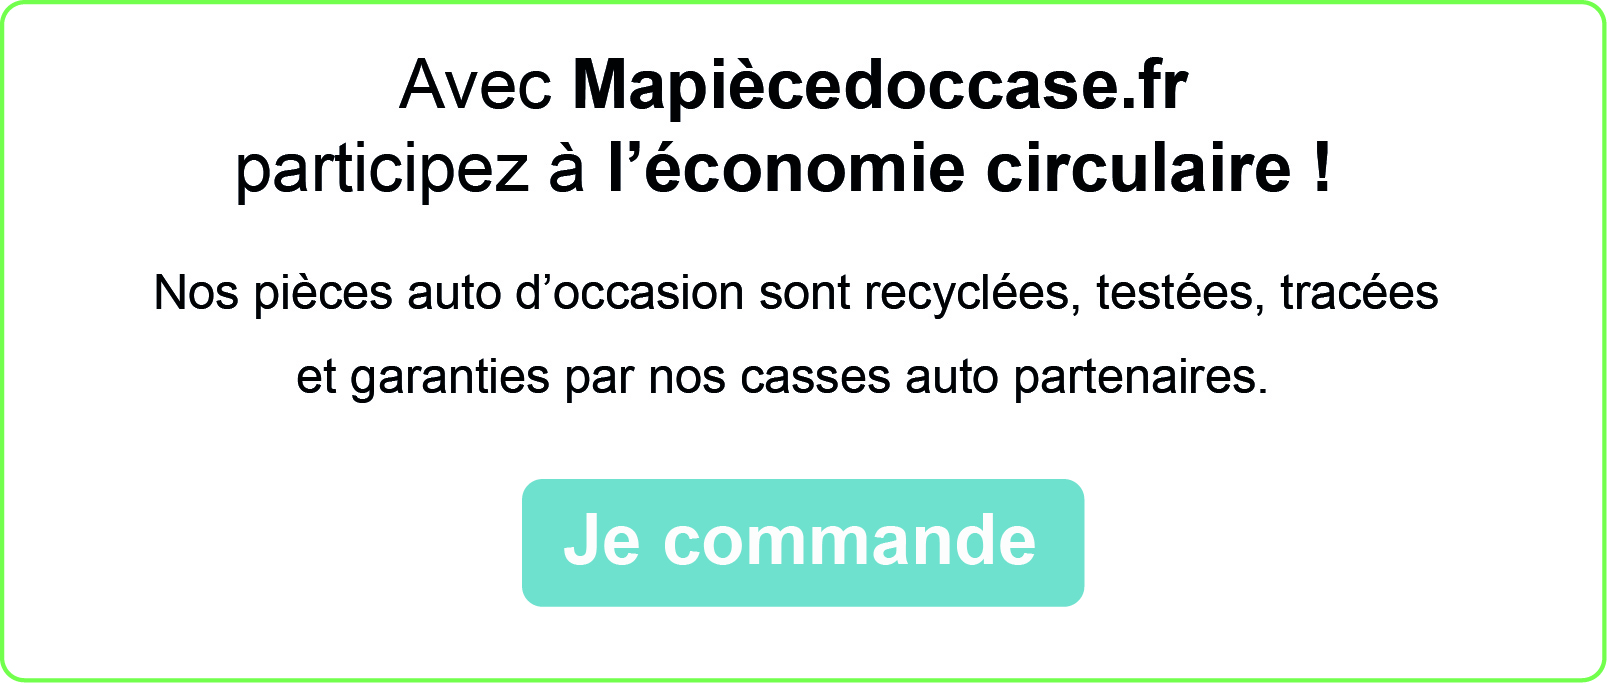 Participez à l'économie circulaire en commandant des pièces auto d'occaison sur Mapiècedoccase.fr